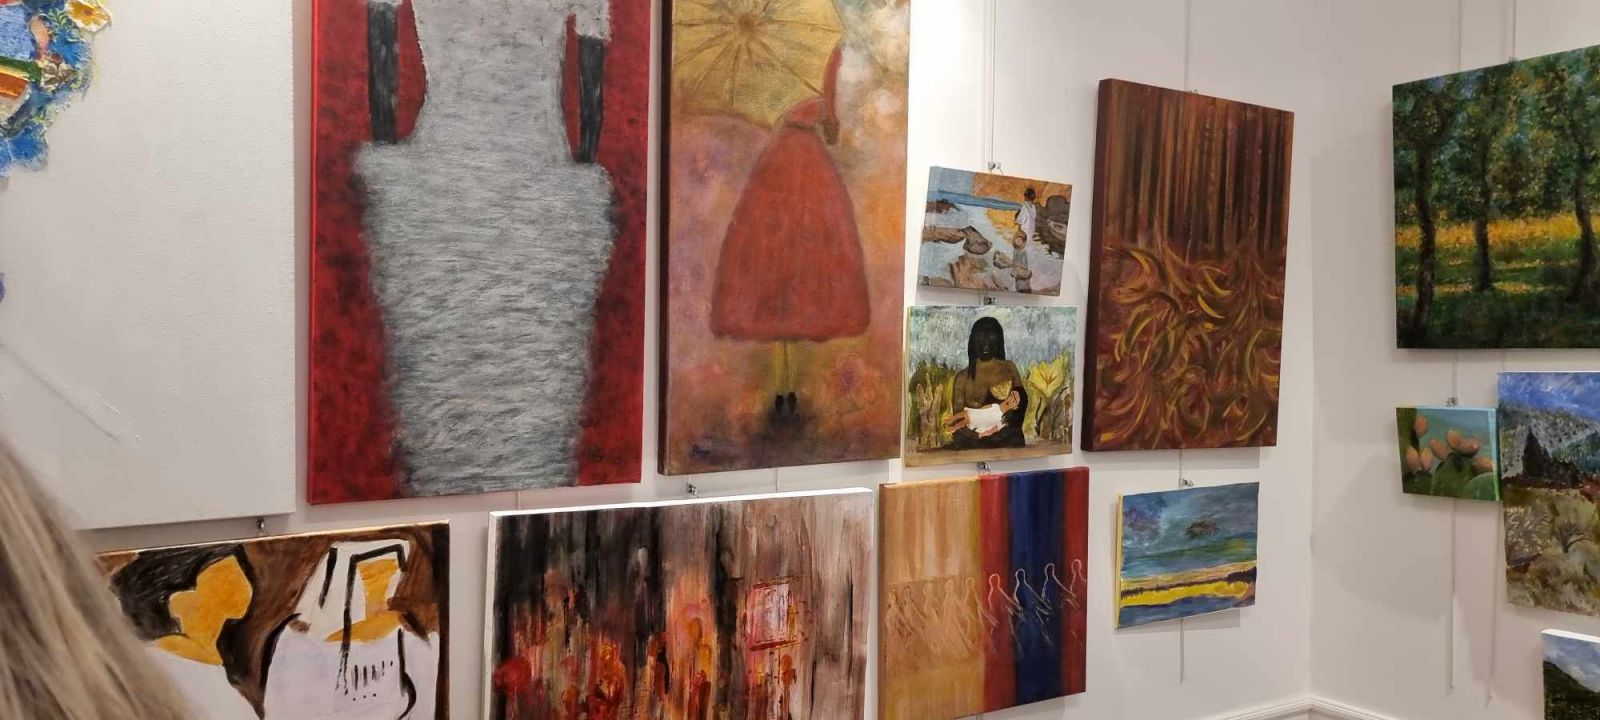 Με επιτυχία στέφθηκαν τα εγκαίνια της Α’ Έκθεσης των Τμημάτων Ζωγραφικής Ενηλίκων του Κέντρου Τέχνης και Πολιτισμού